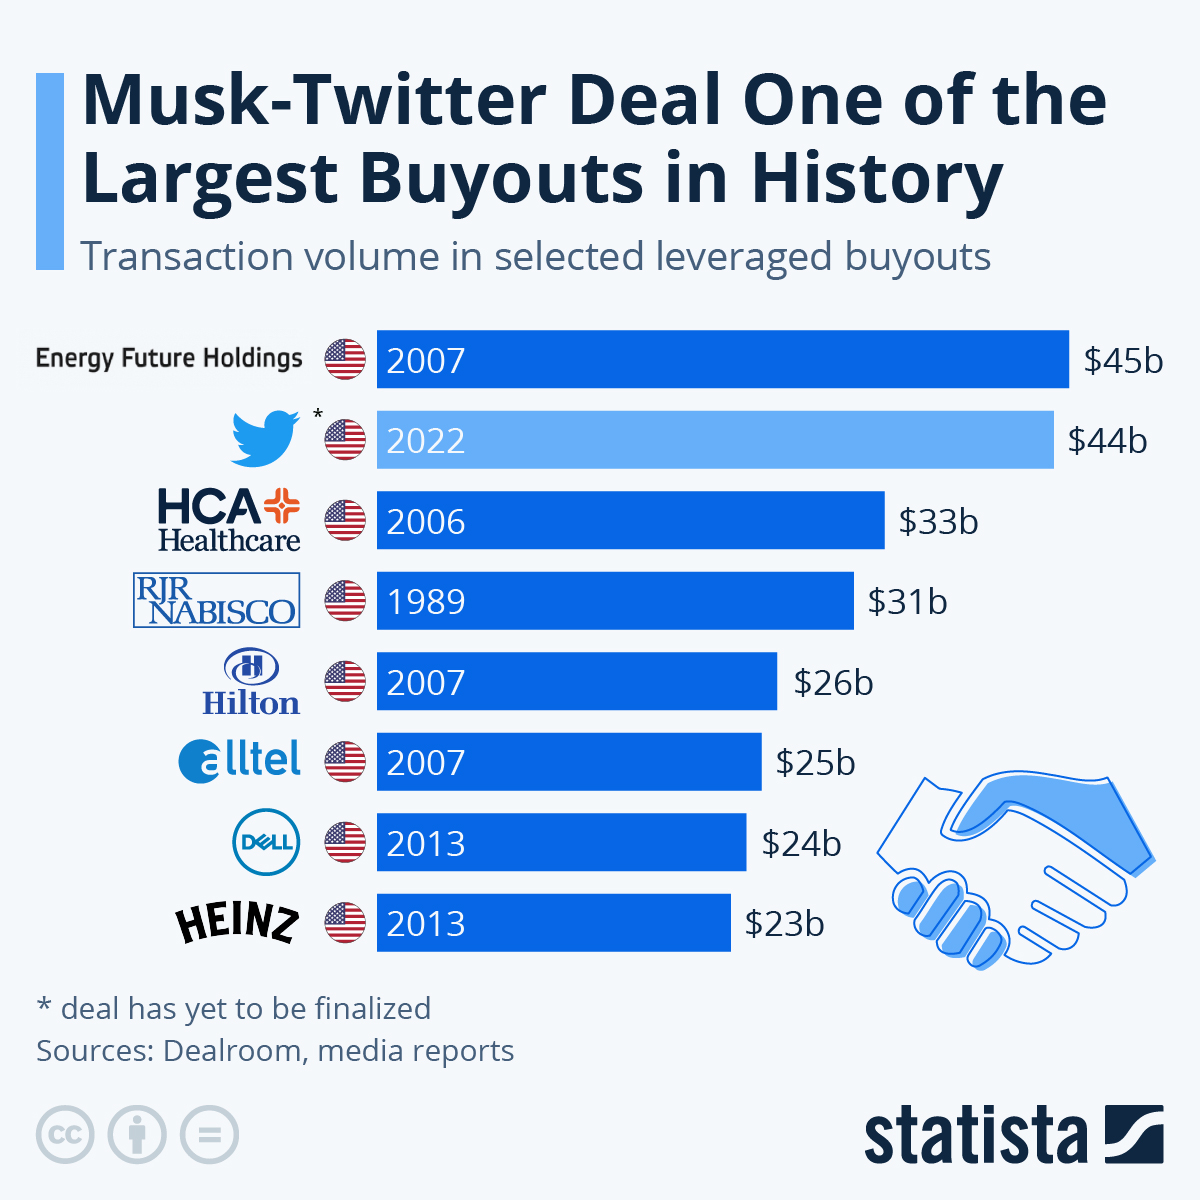 یکی از بزرگترین خریدهای تاریخ در حال انجام است ماسک با چه قیمتی توییتر را می خواهد؟